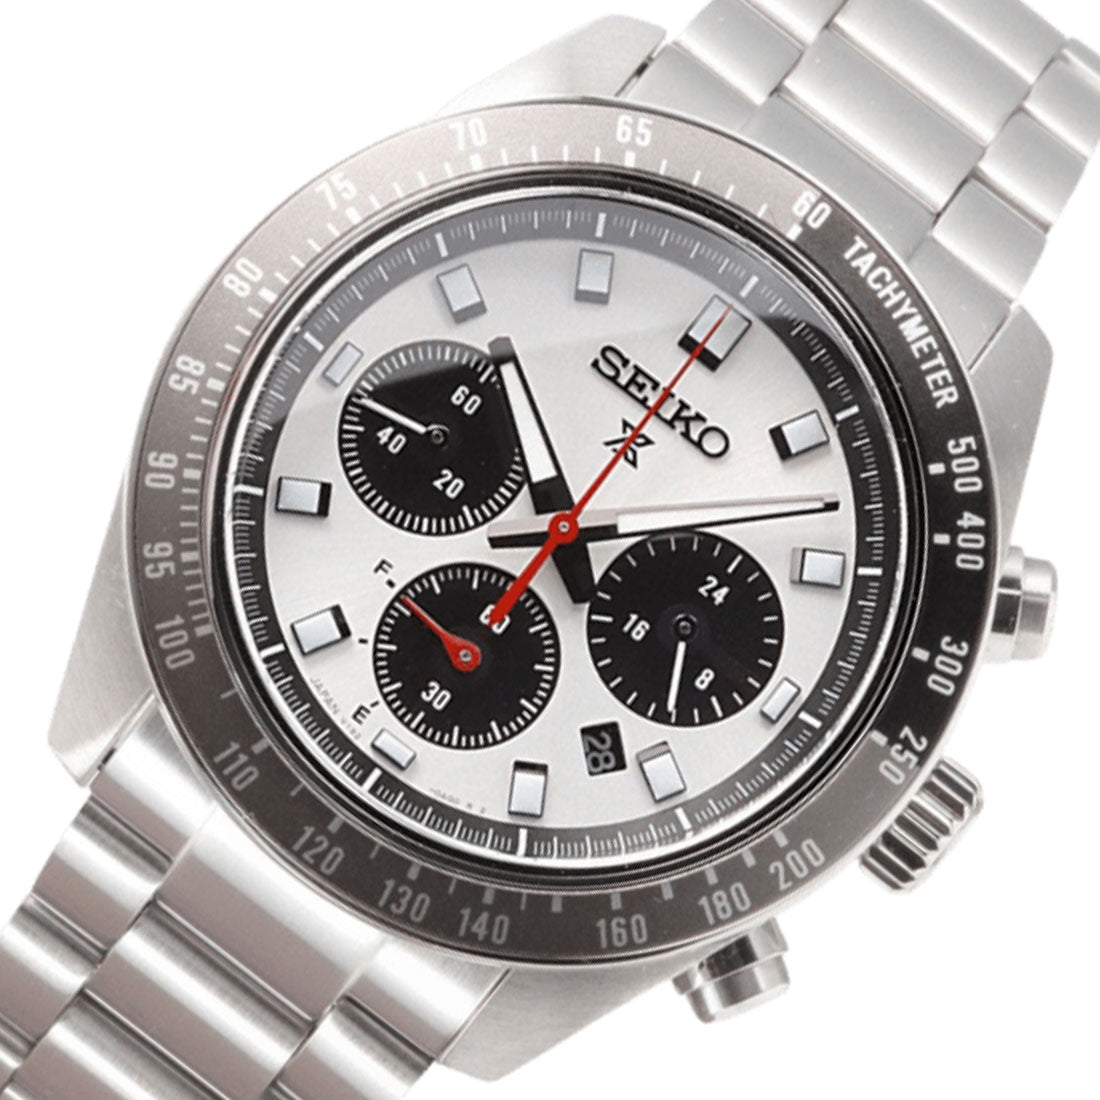 Seiko Panda Prospex SpeedTimer SBDL095 Chronograph Stopwatch Solar Watch -Seiko